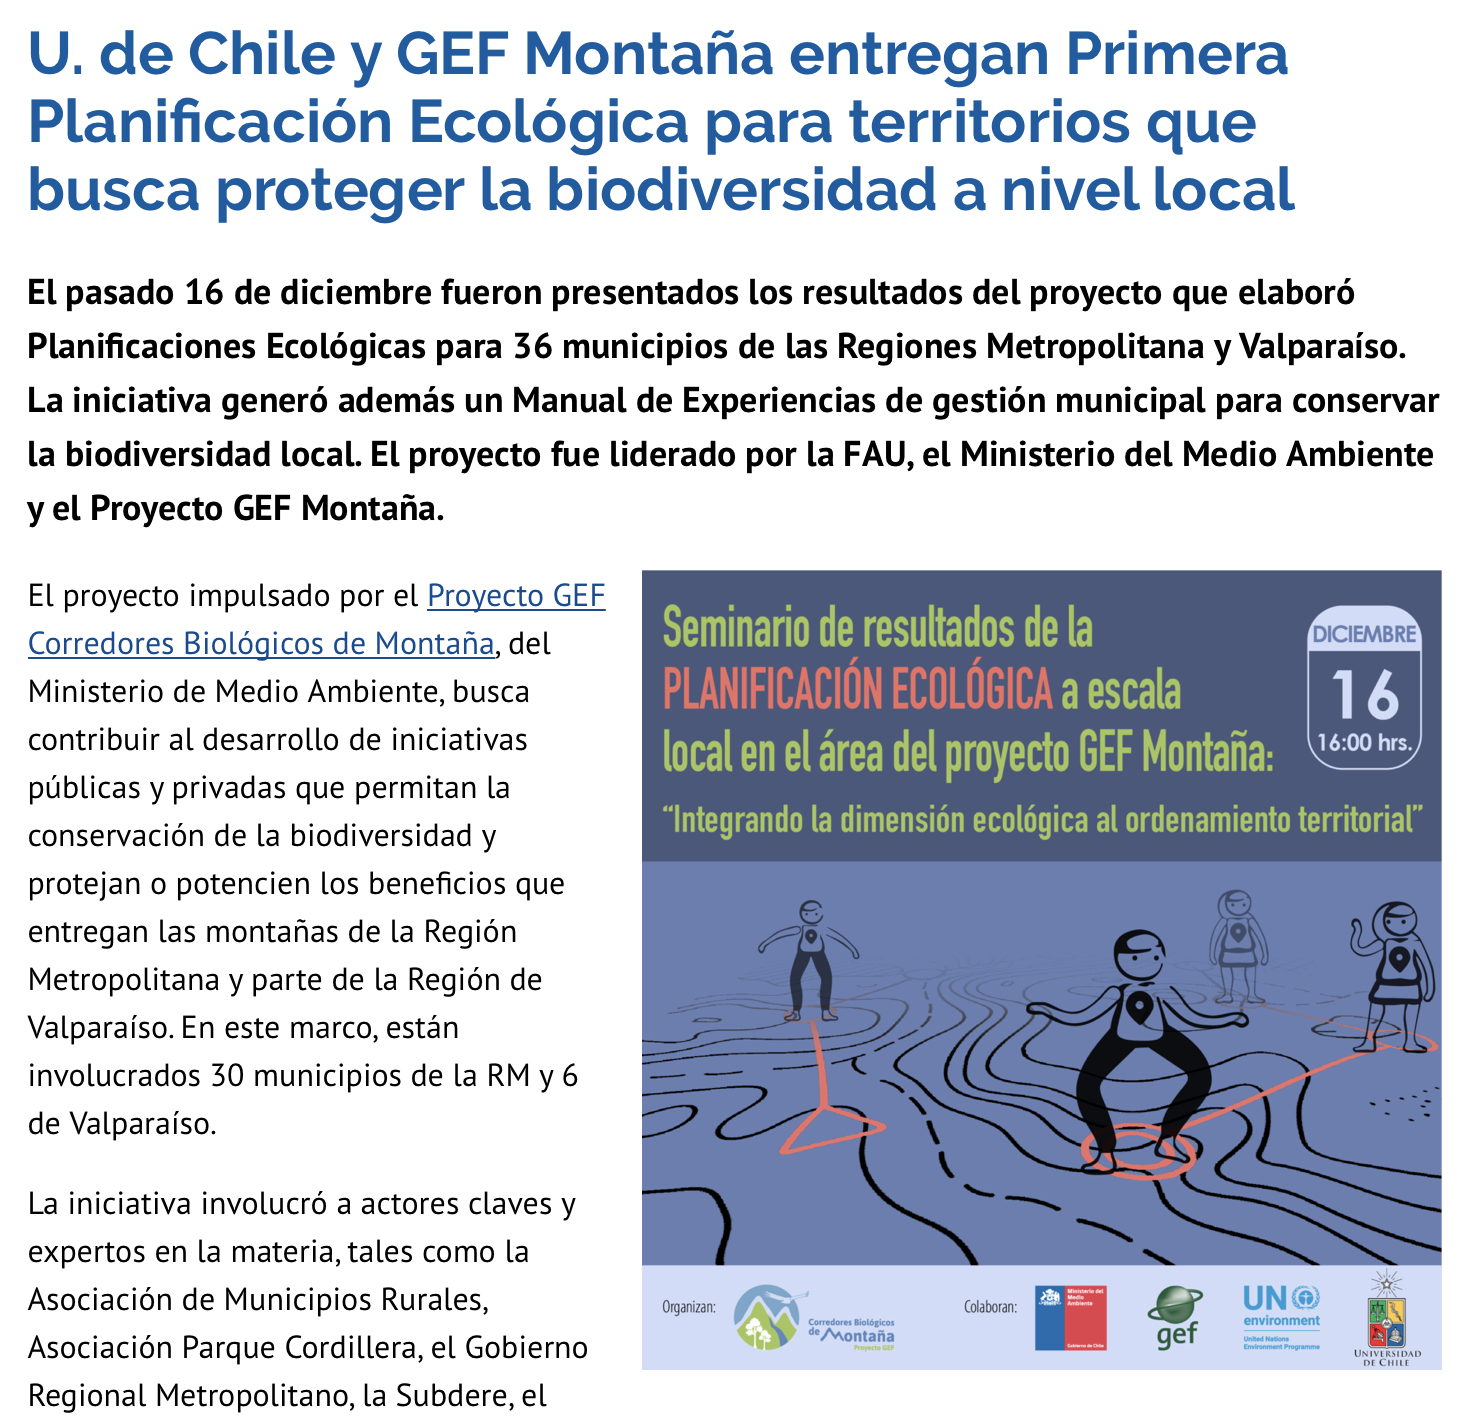 U. de Chile y GEF Montaña entregan Primera Planificación Ecológica para territorios que busca proteger la biodiversidad a nivel local